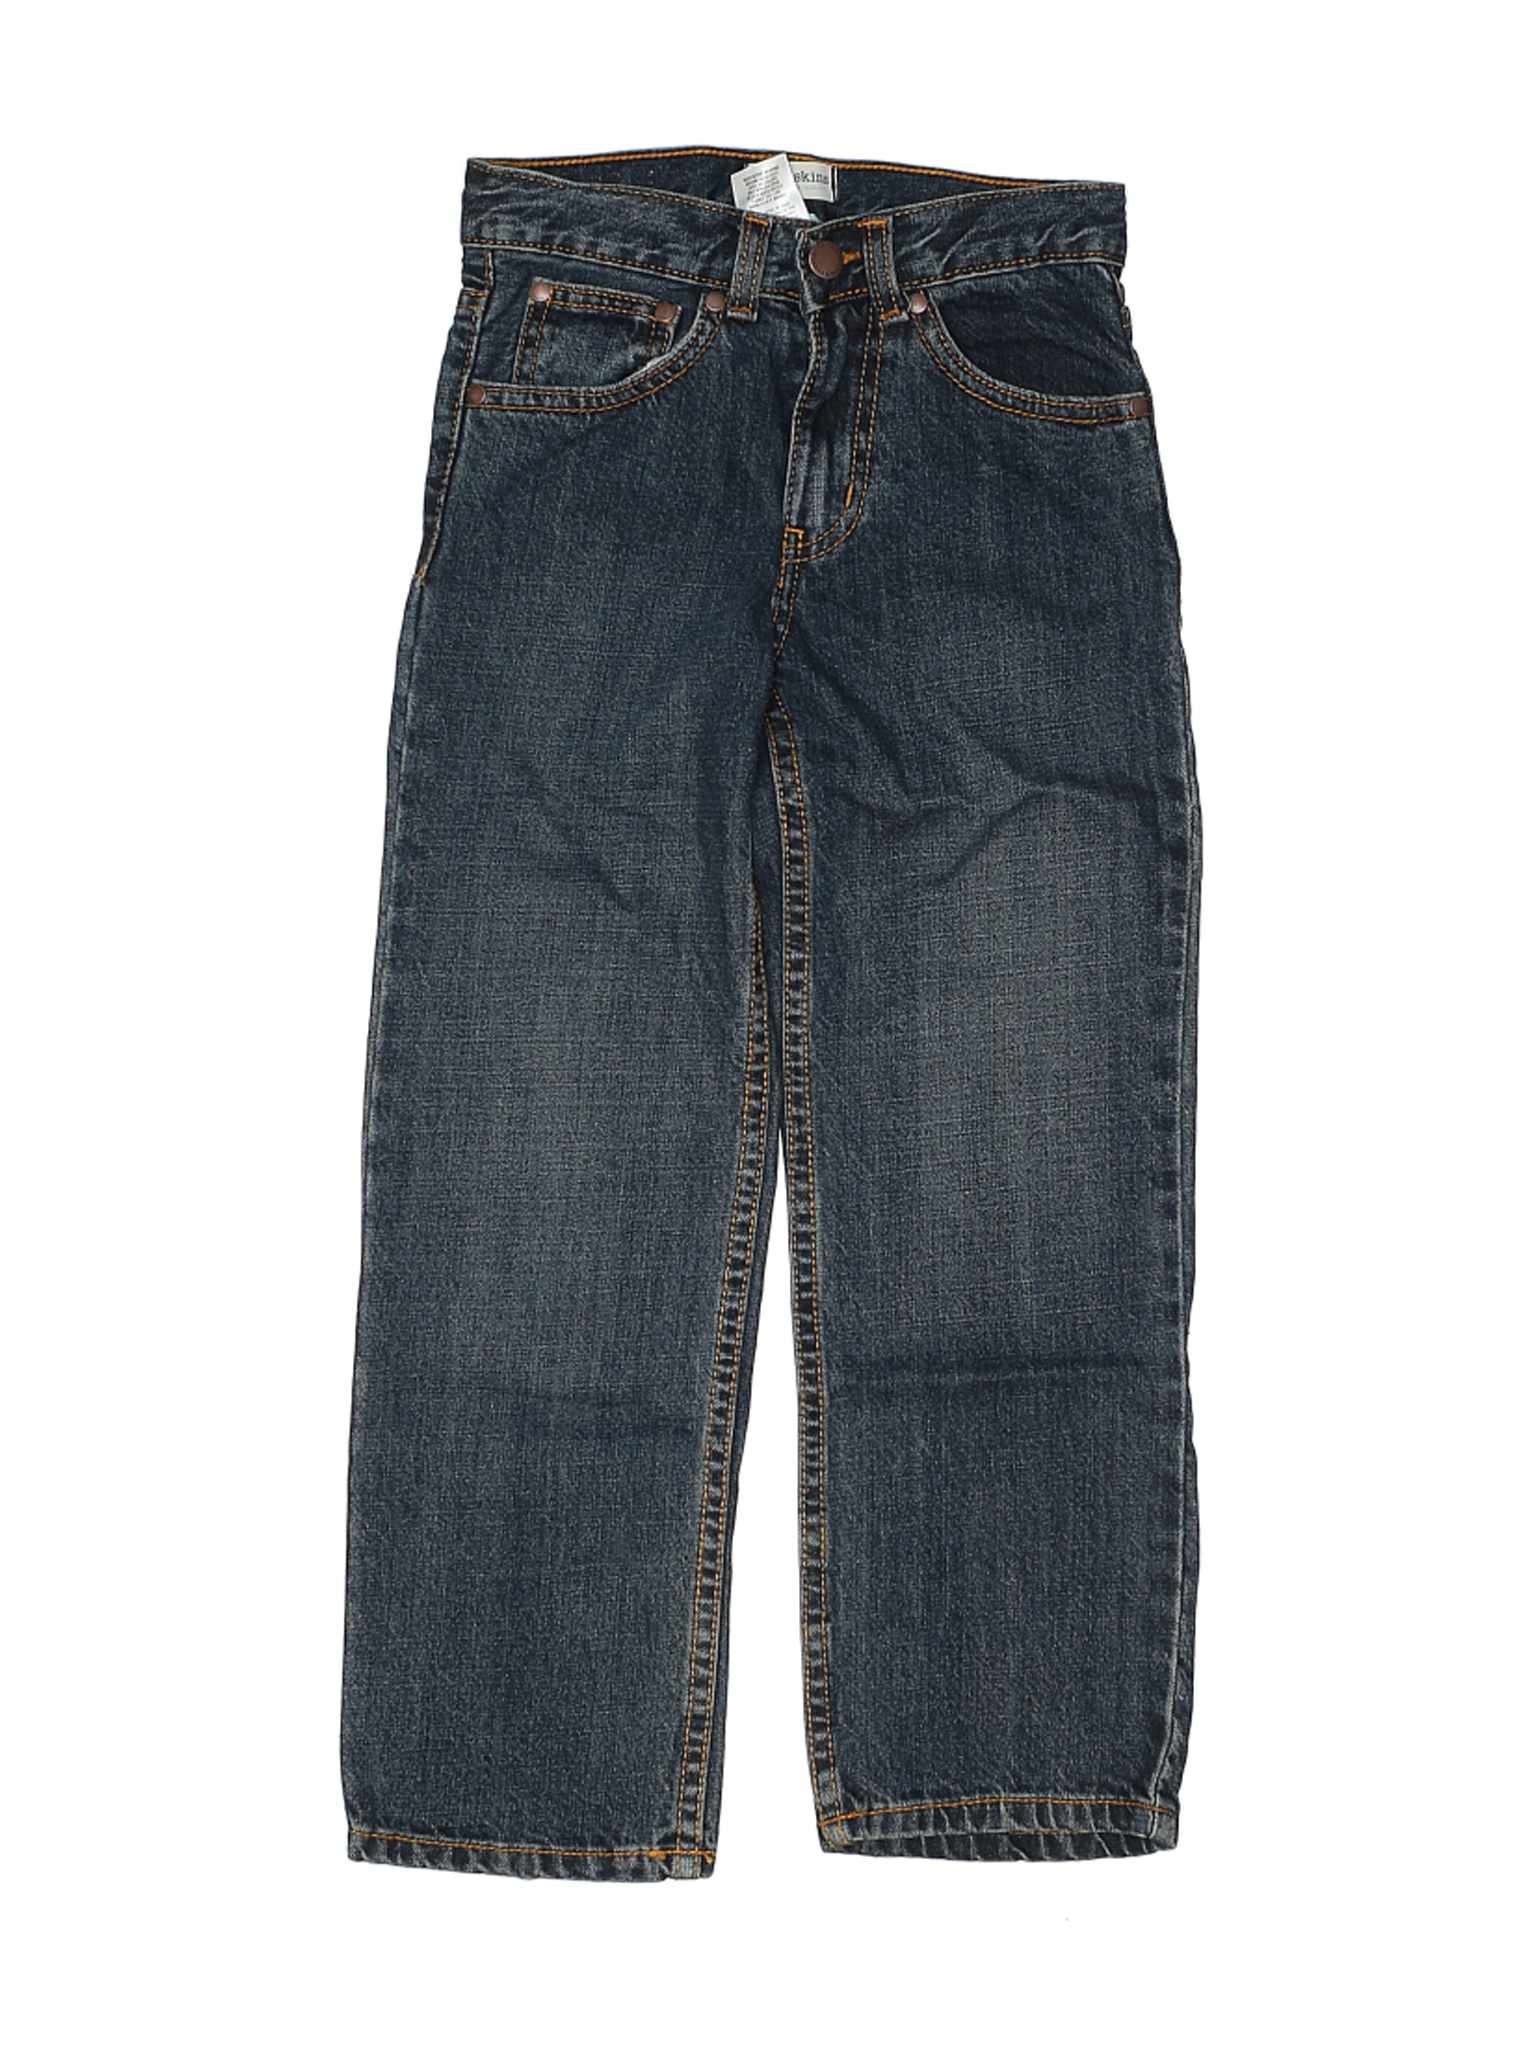 Toughskins Boys Blue Jeans 7 | eBay